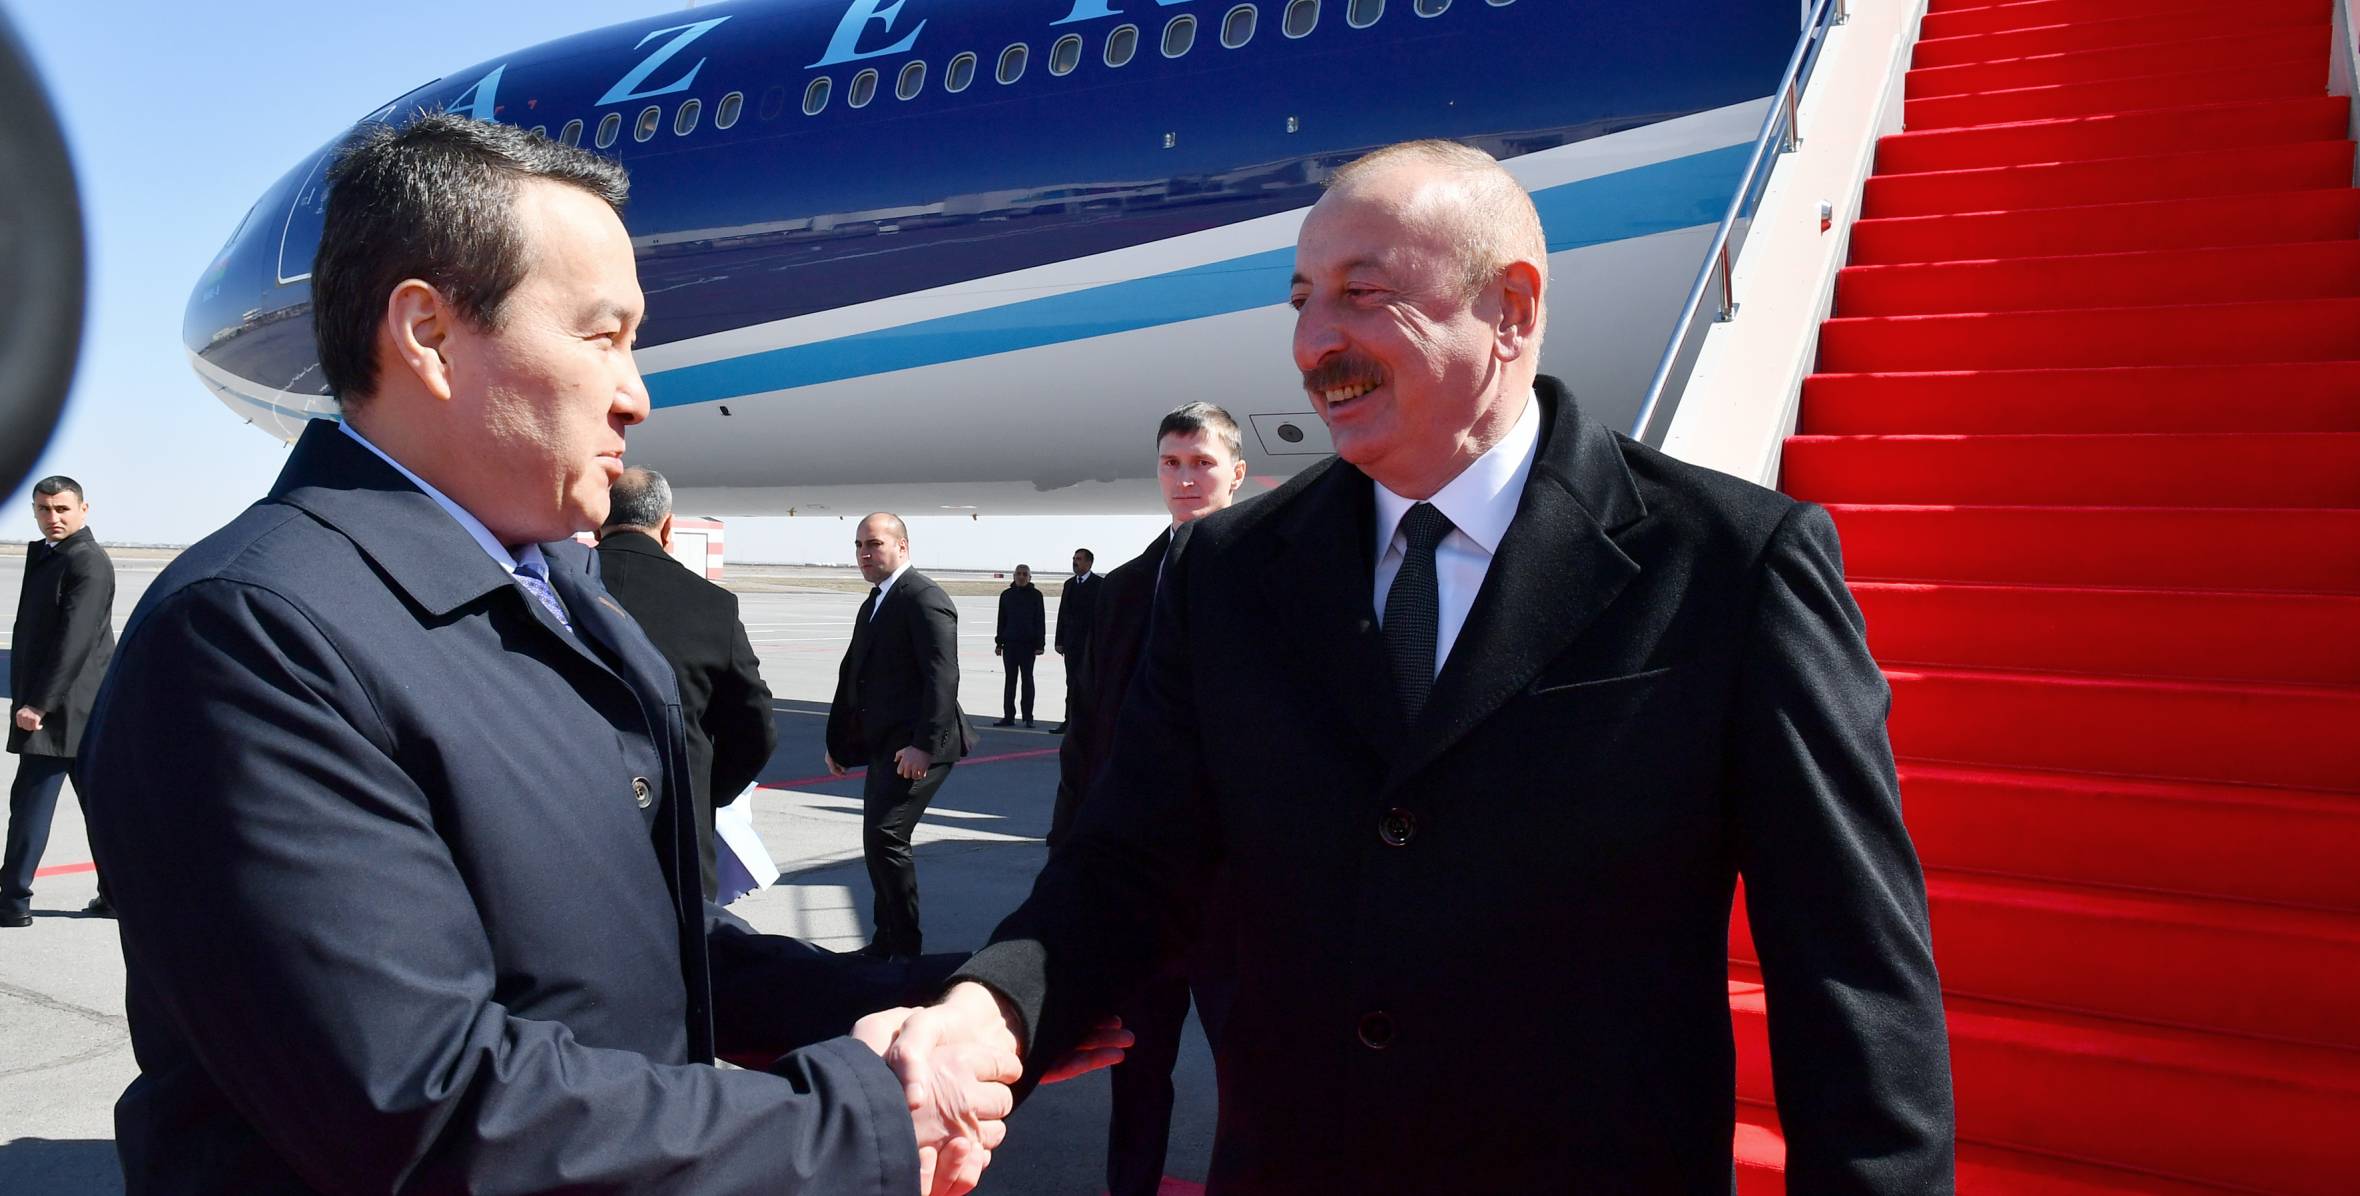 Ilham Aliyev arrived in Kazakhstan for official visit